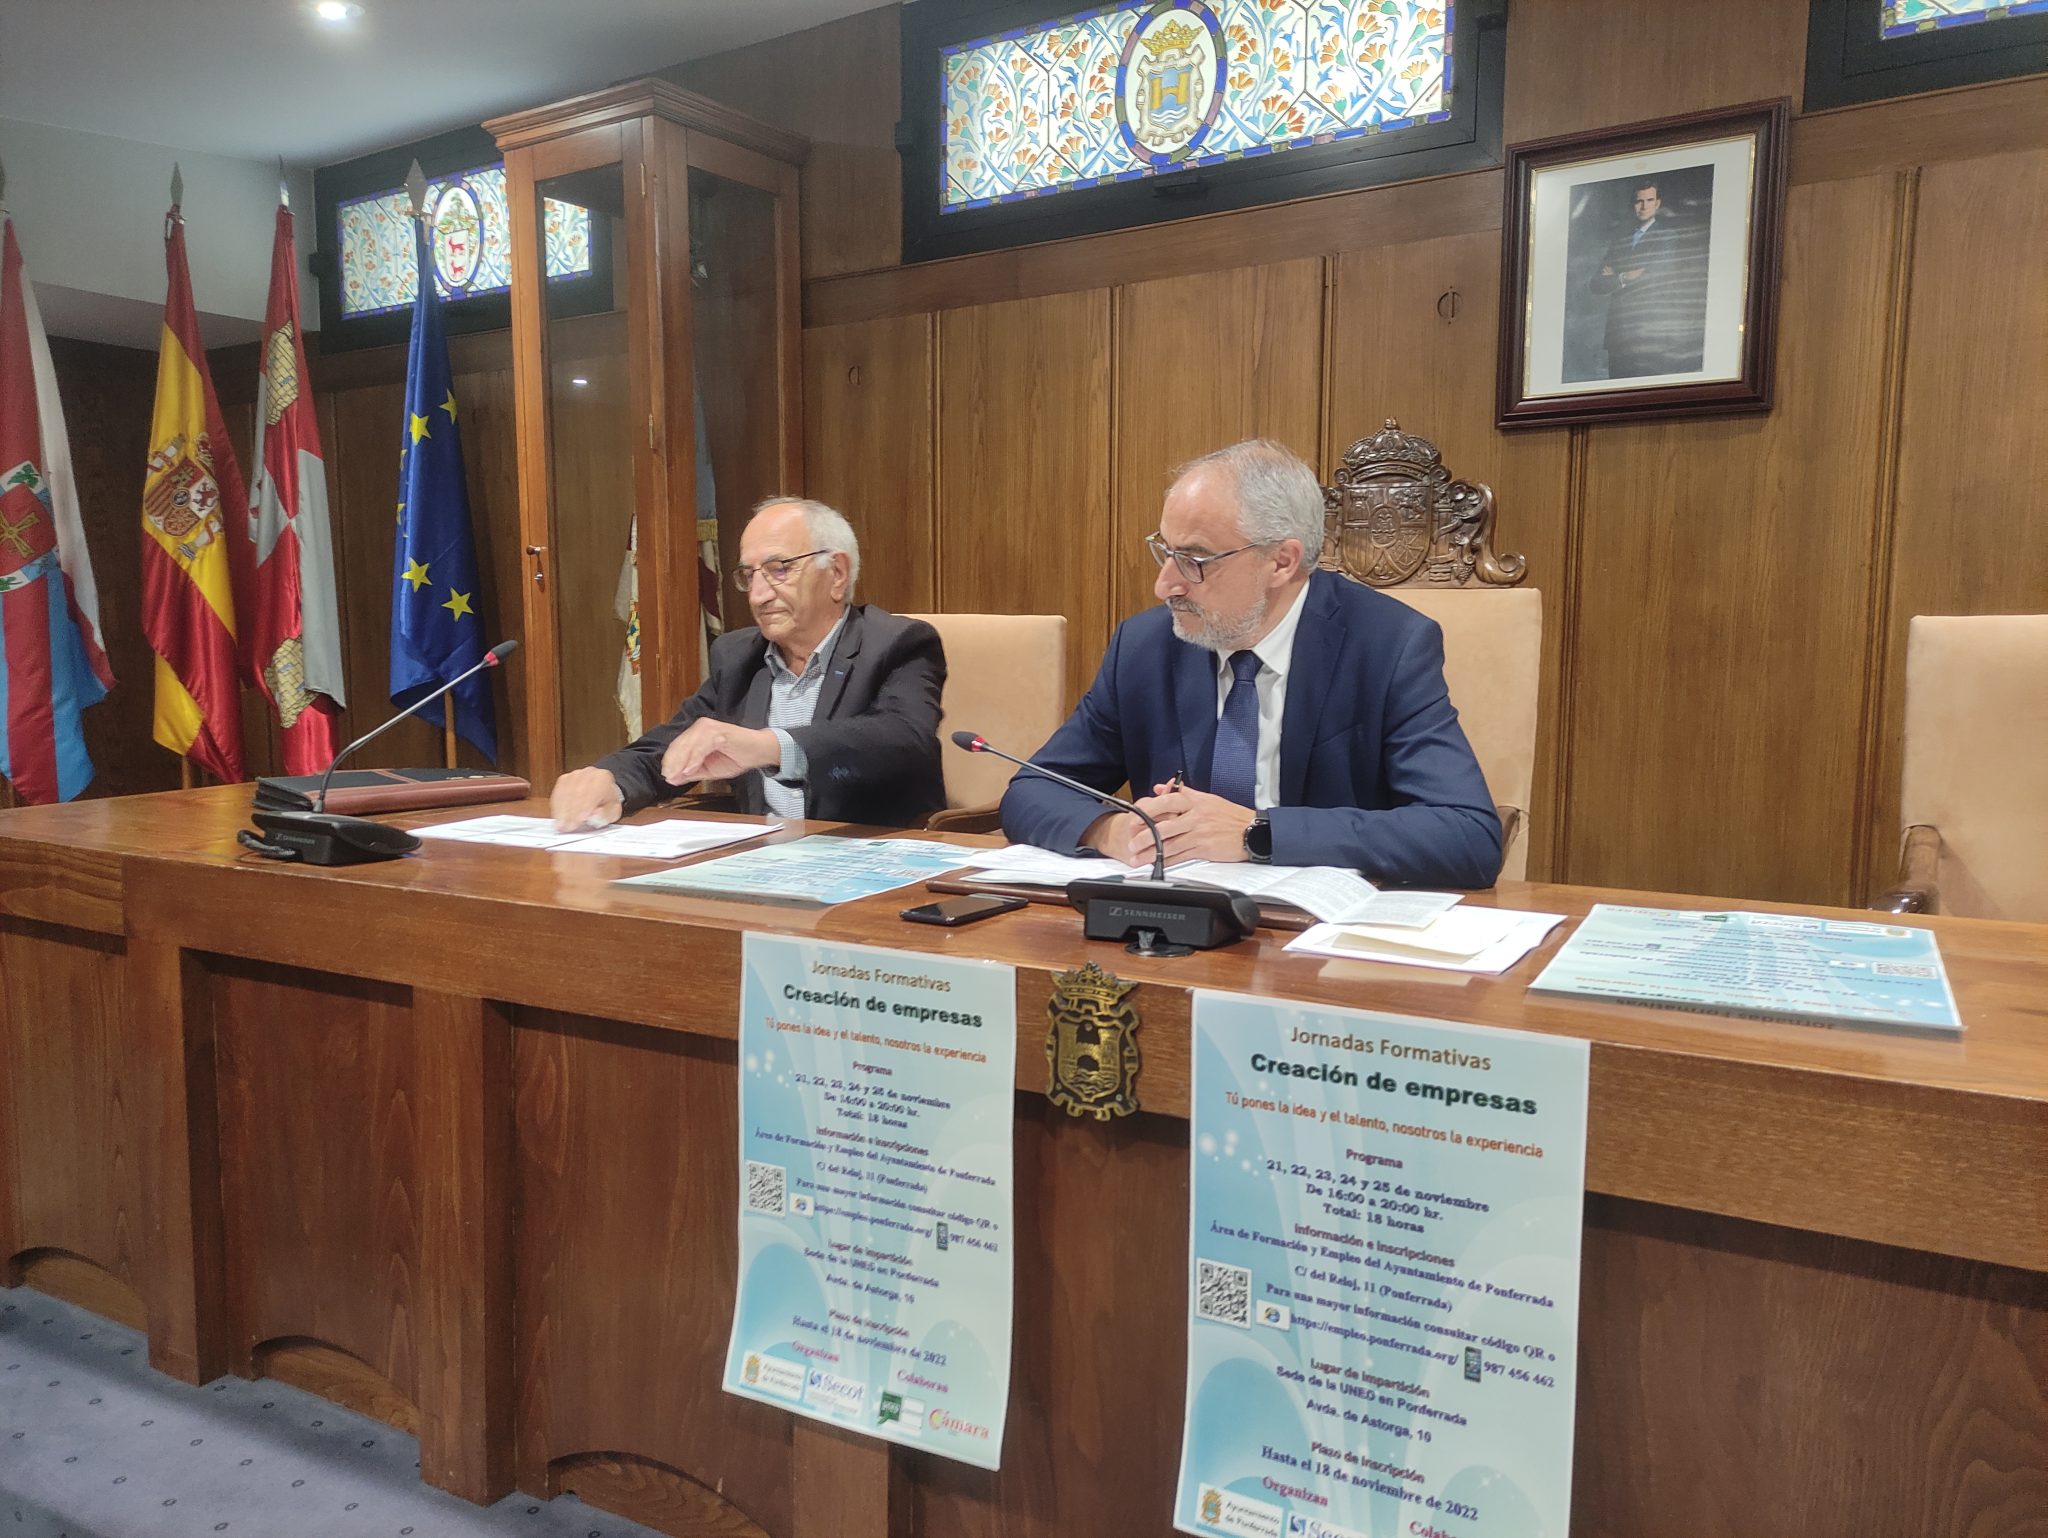 El Ayuntamiento de Ponferrada y Secot ponen en marcha unas jornadas formativas sobre la creación de empresas 1